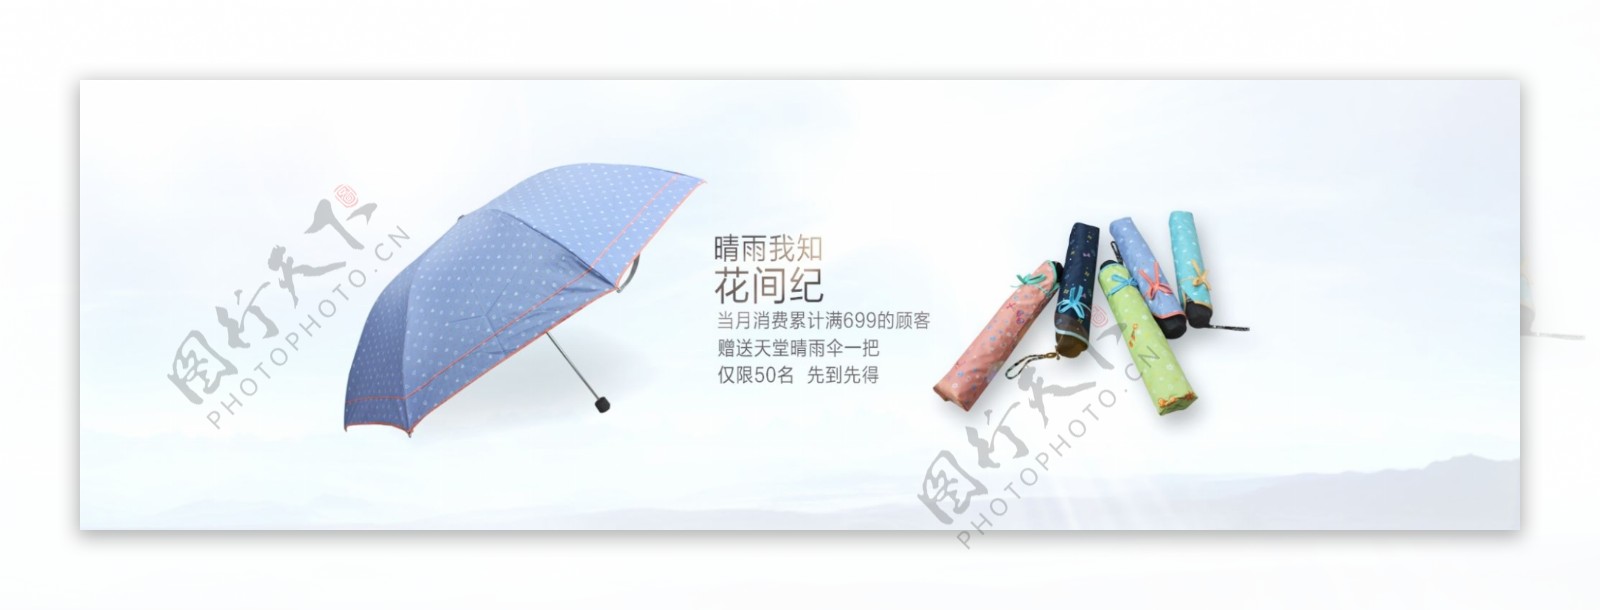 淘宝时尚雨伞促销海报设计PSD素材